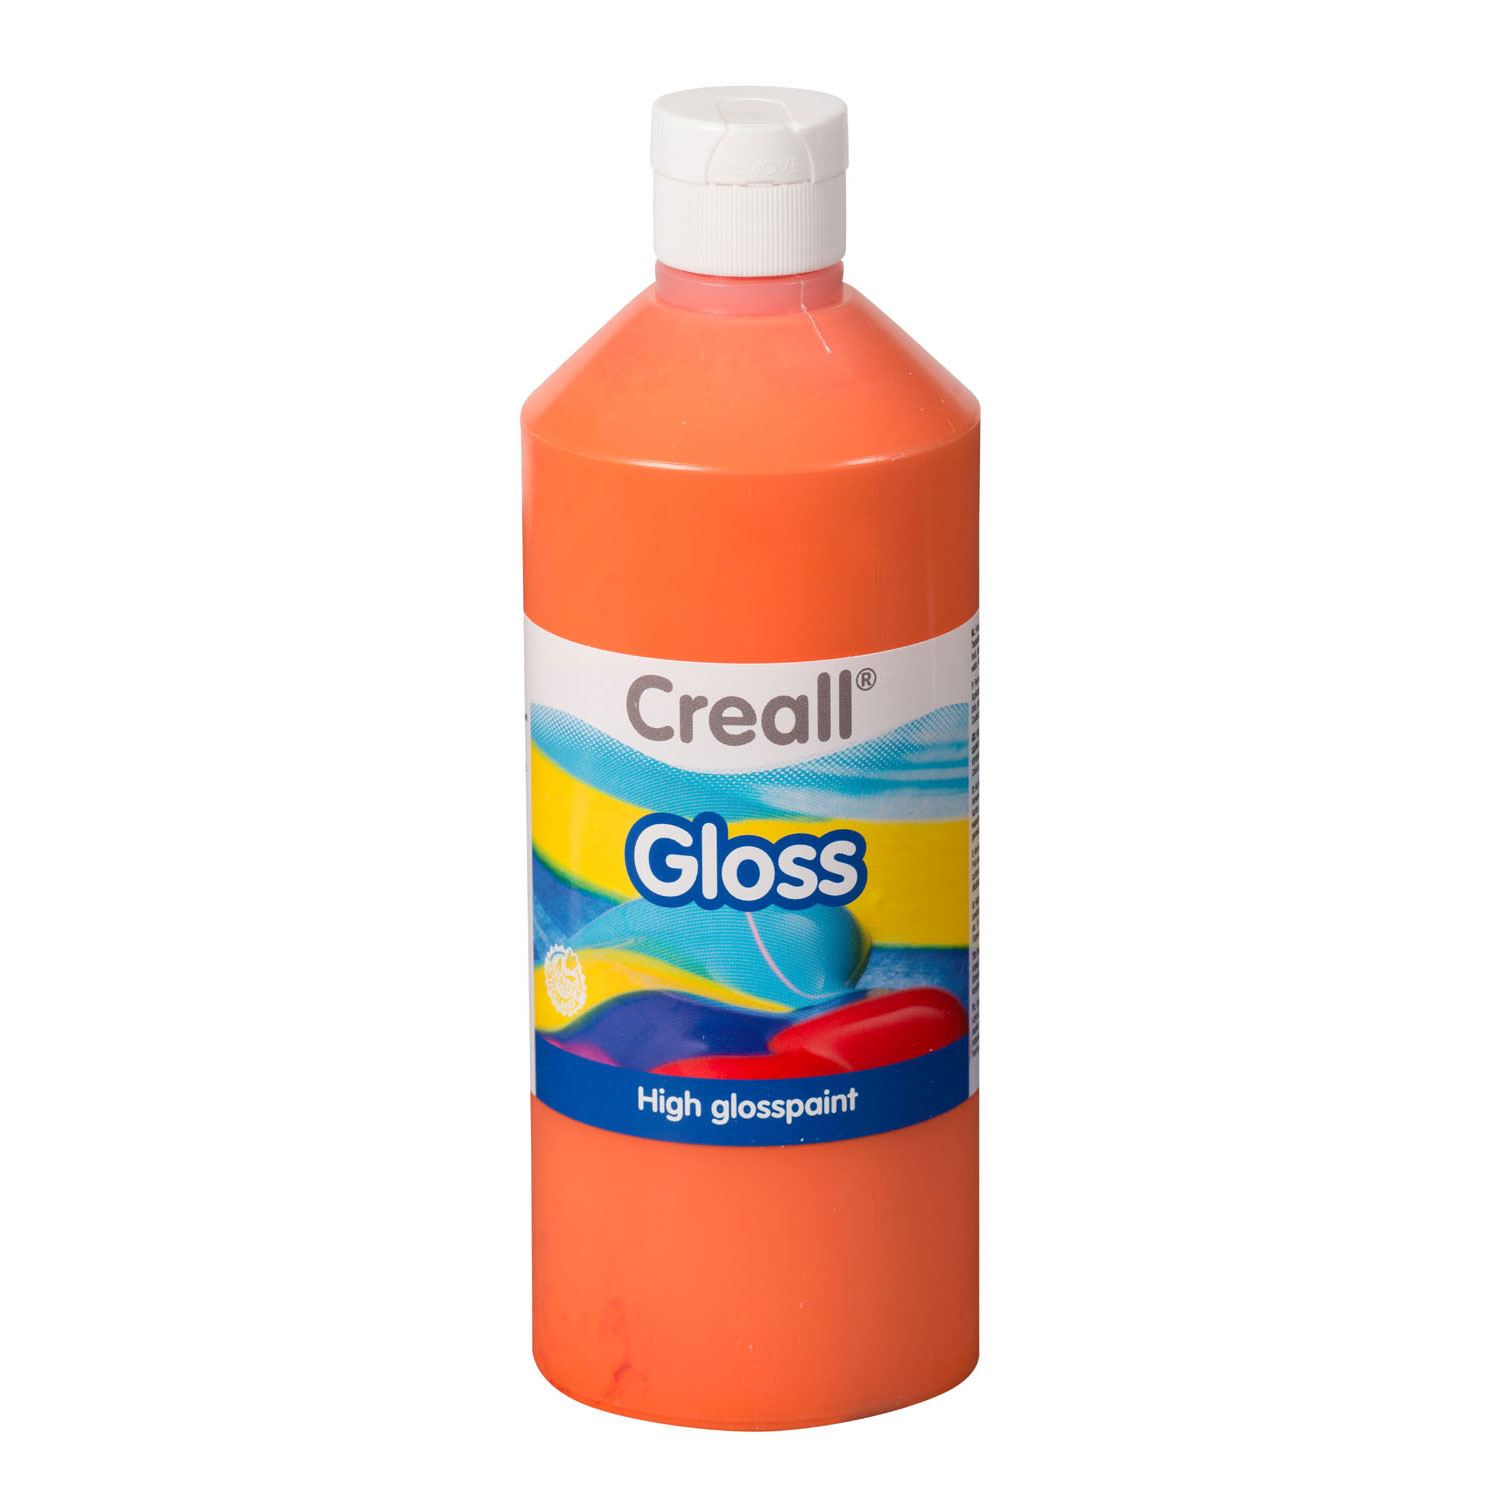 Creall Gloss Peinture Brillante Orange, 500 ml